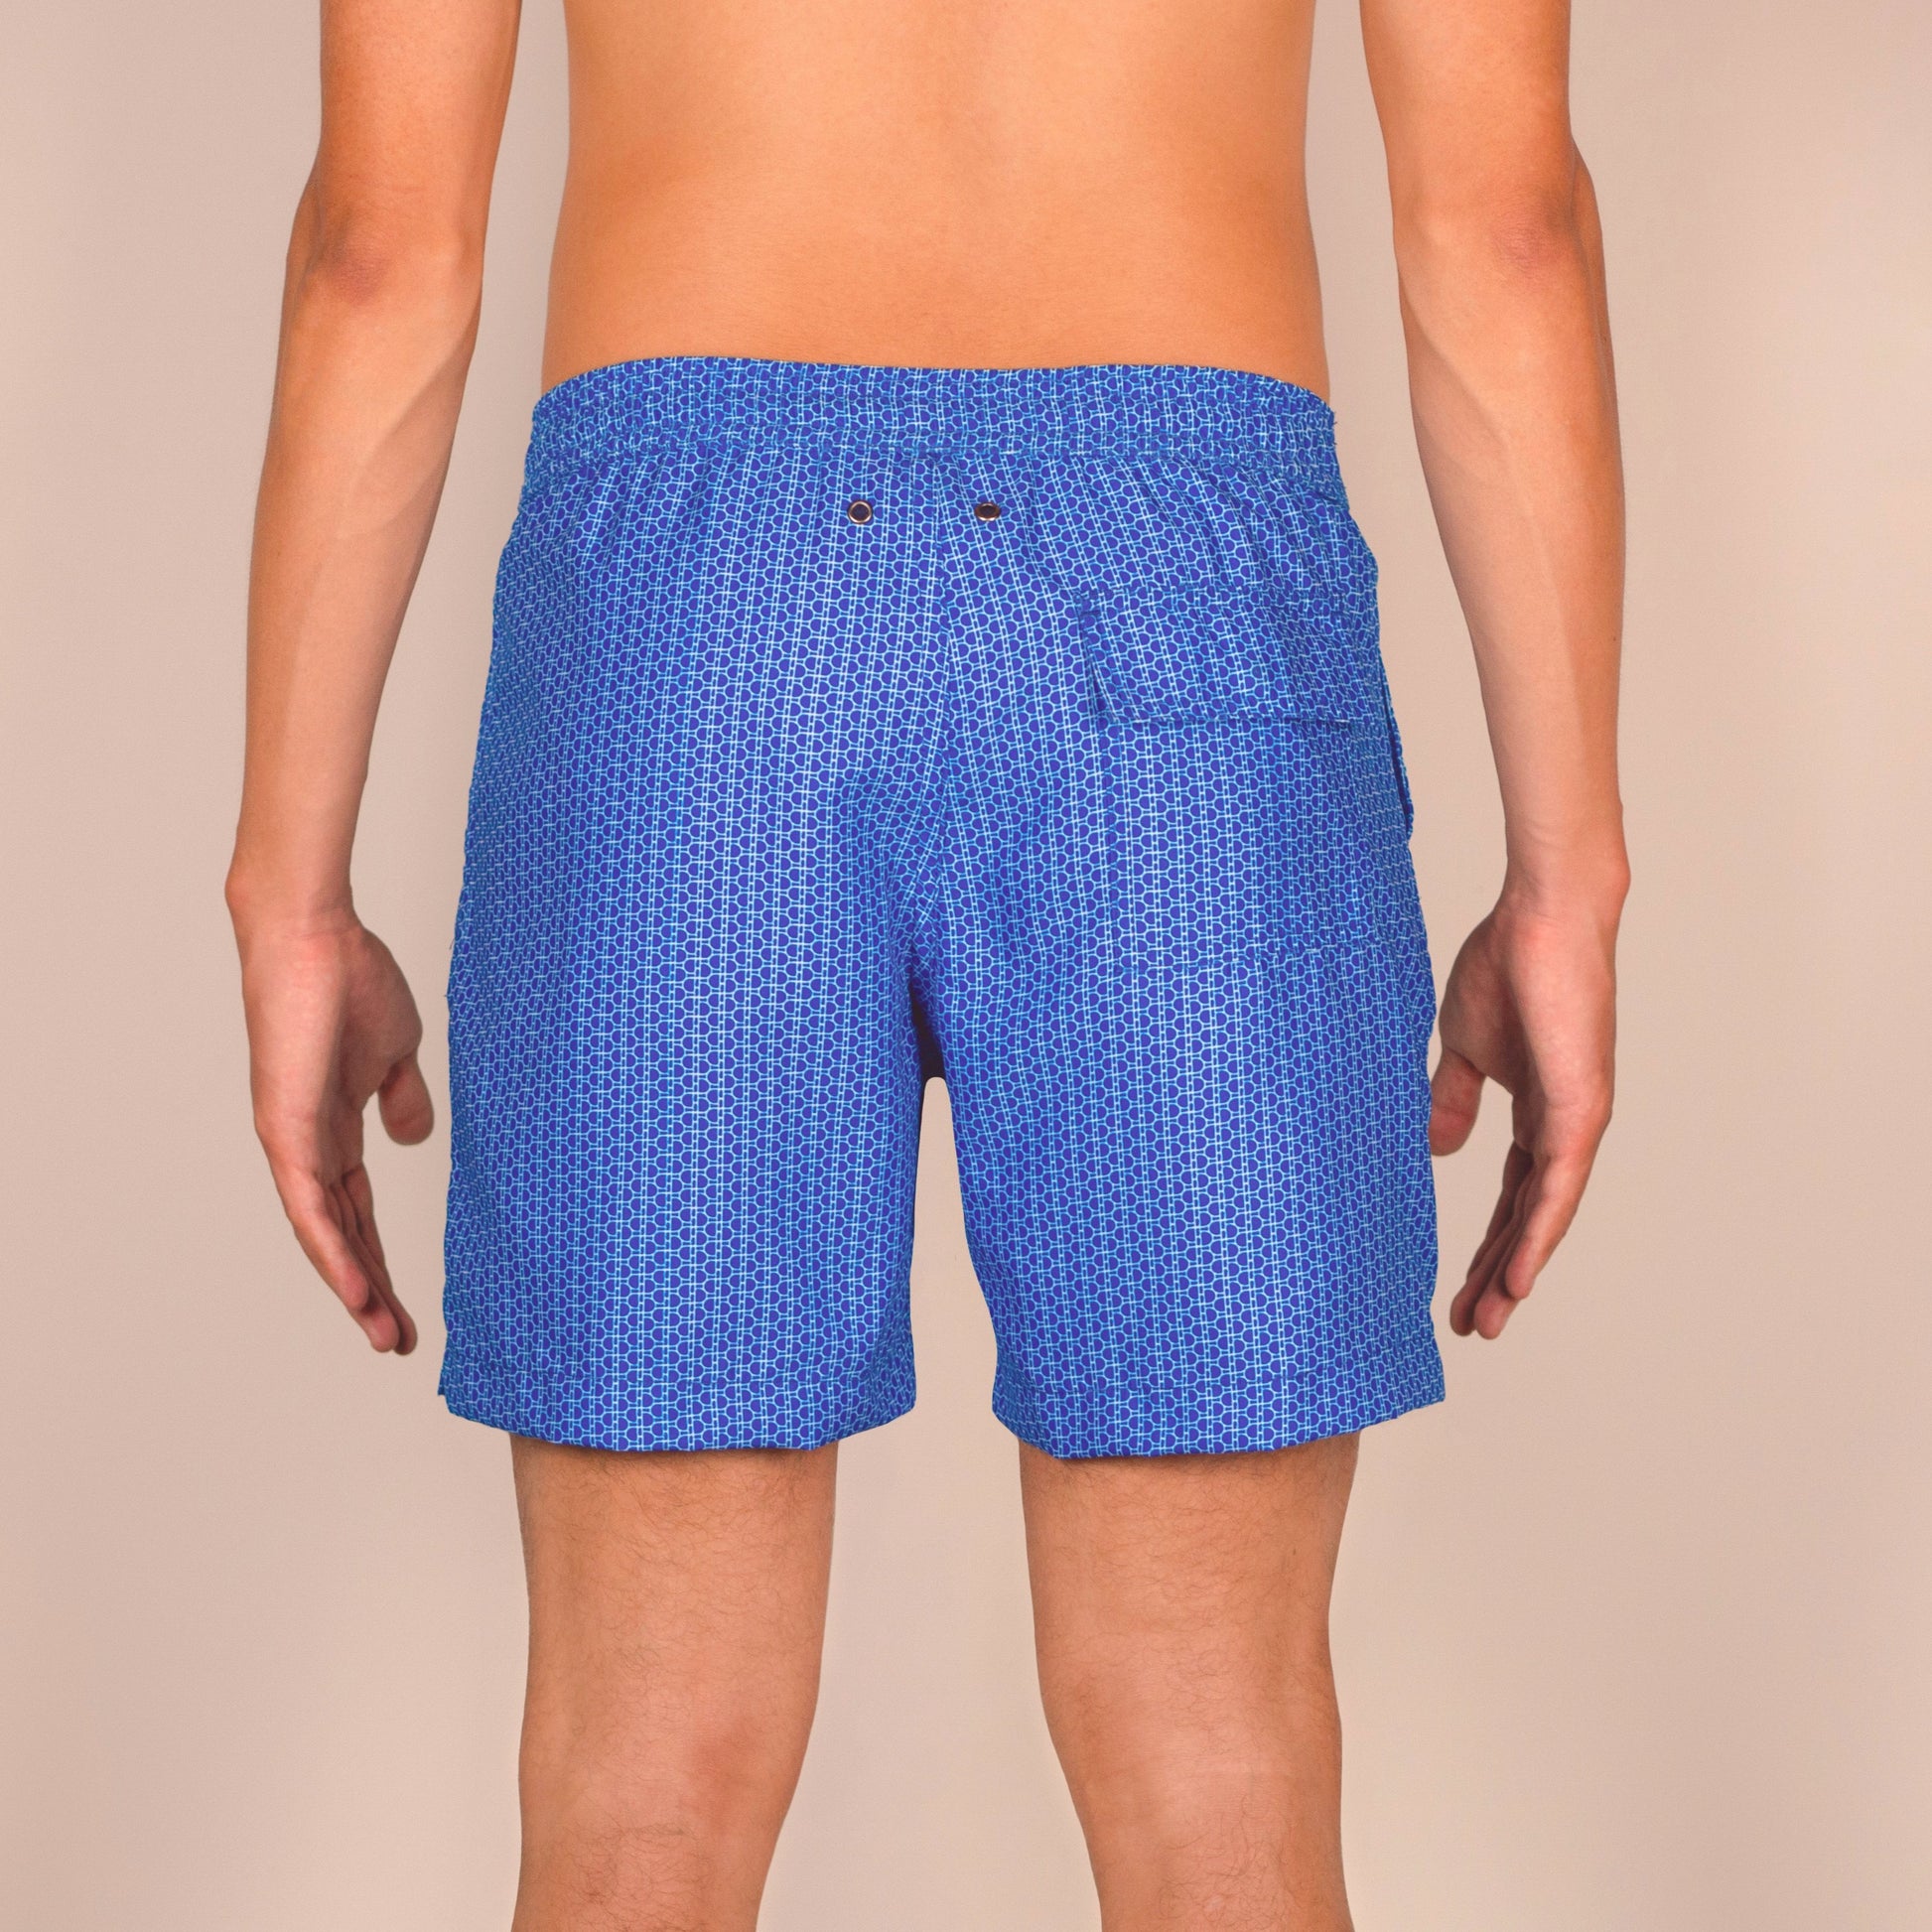 Men's designer Swim Shorts, Swim Trunks